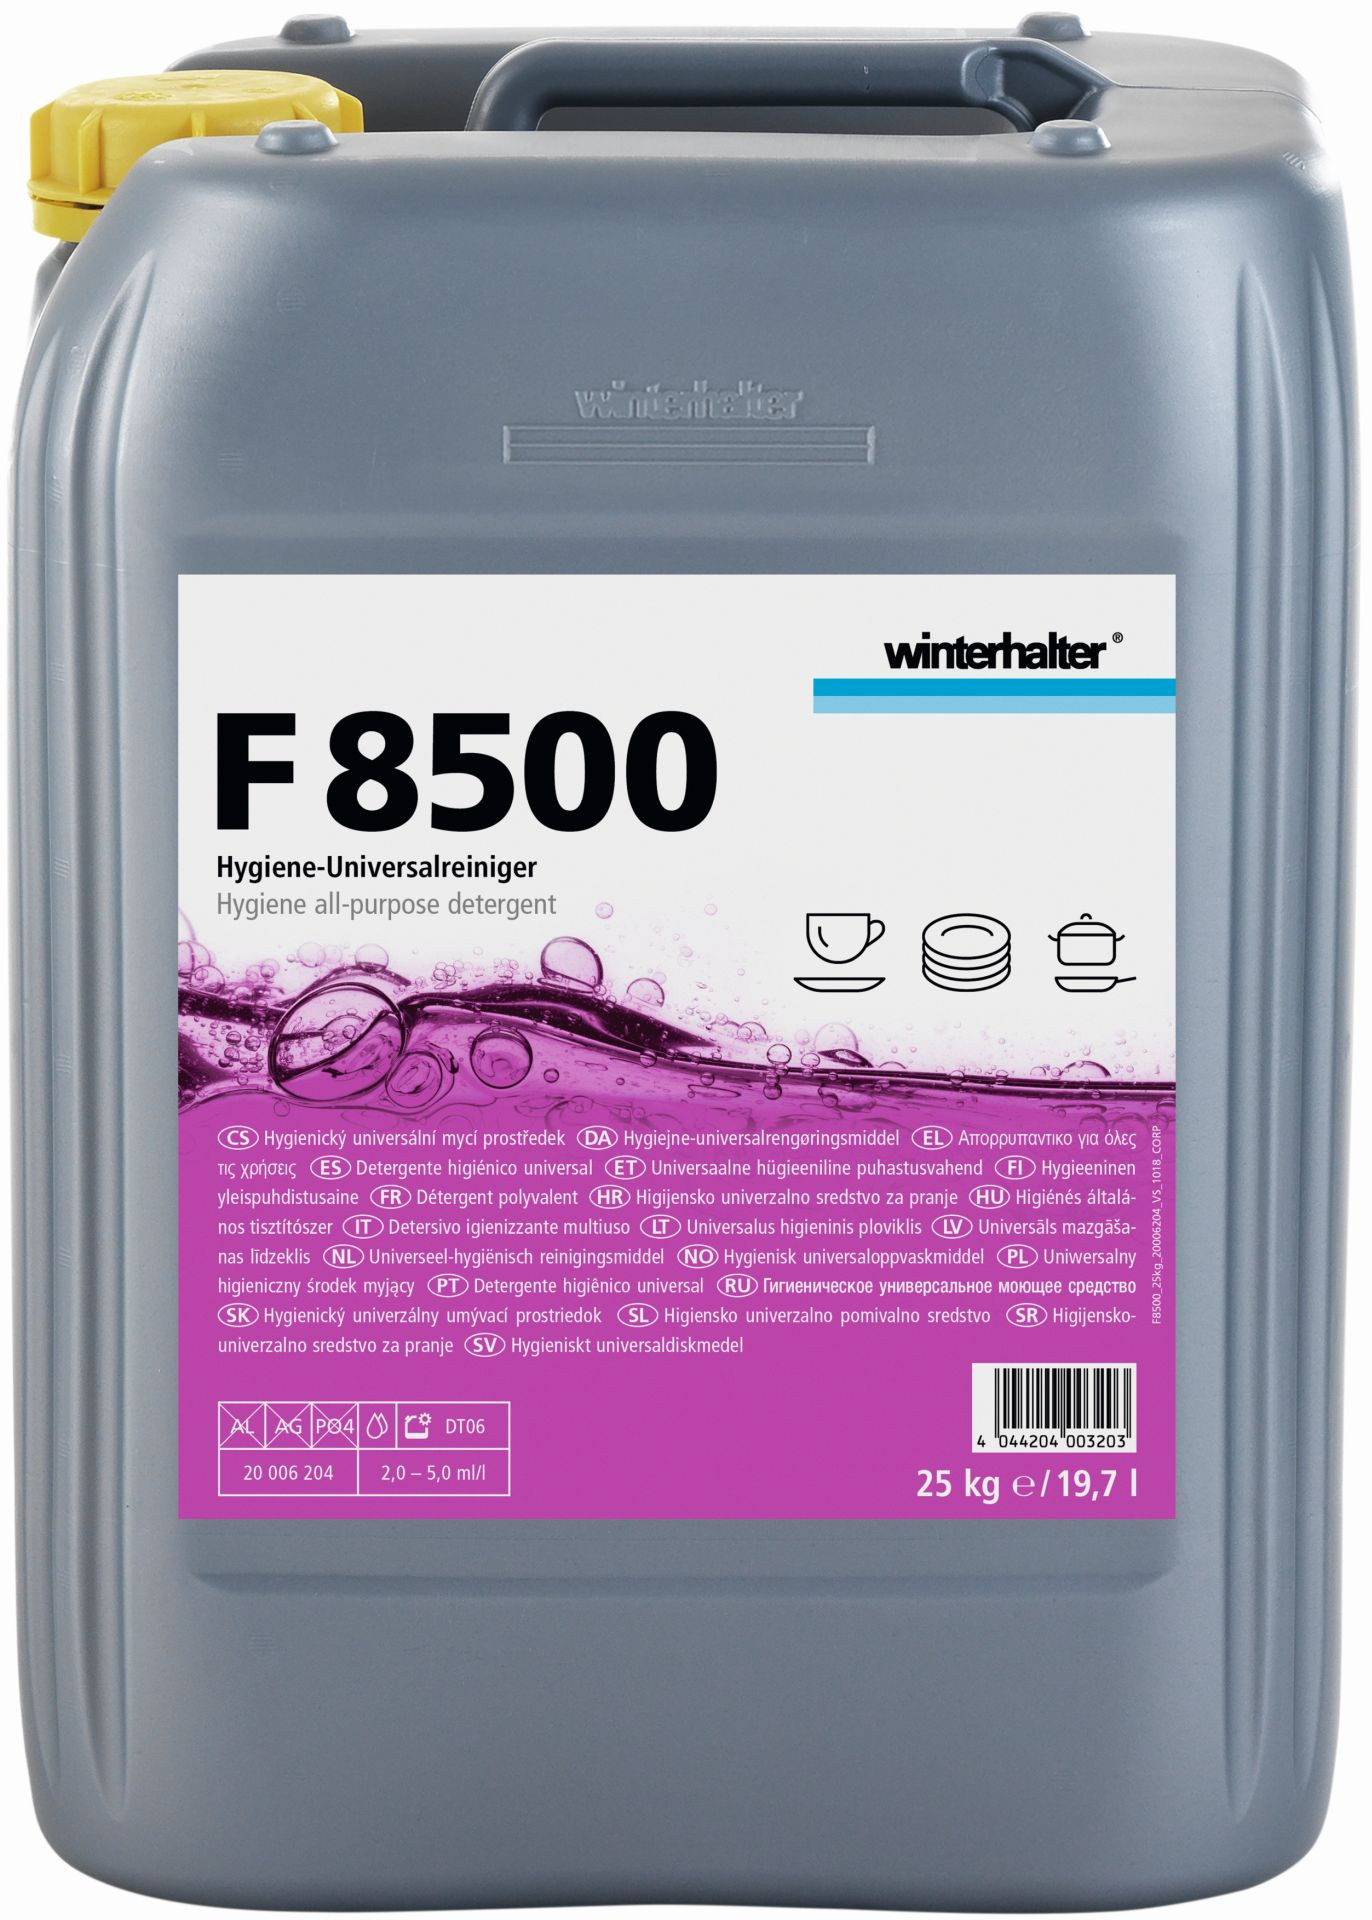 Hygiene-Universalreiniger F 8500 / 25,00 kg Kanister